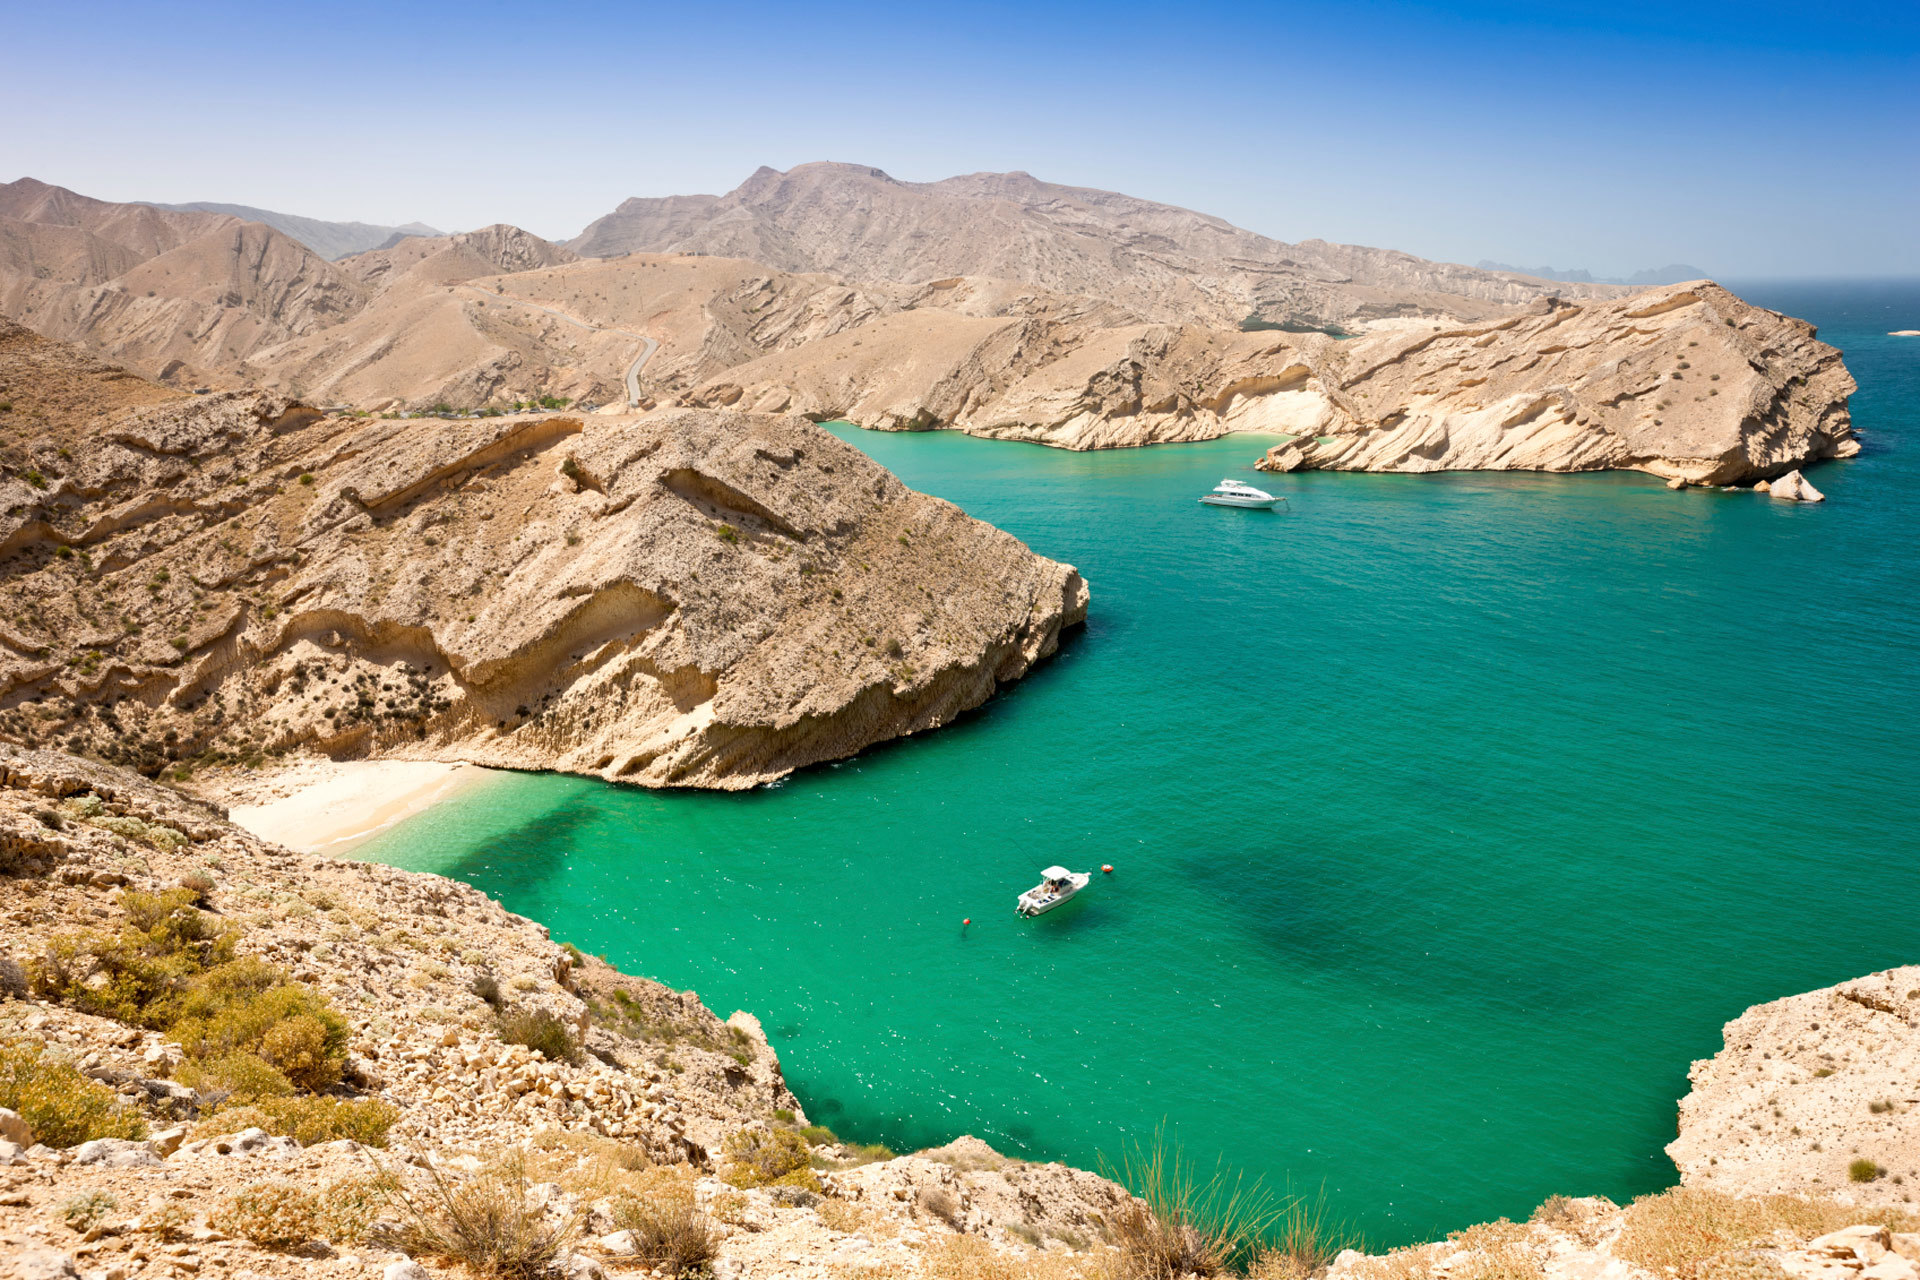 Una de las características playas turquesas de Omán.